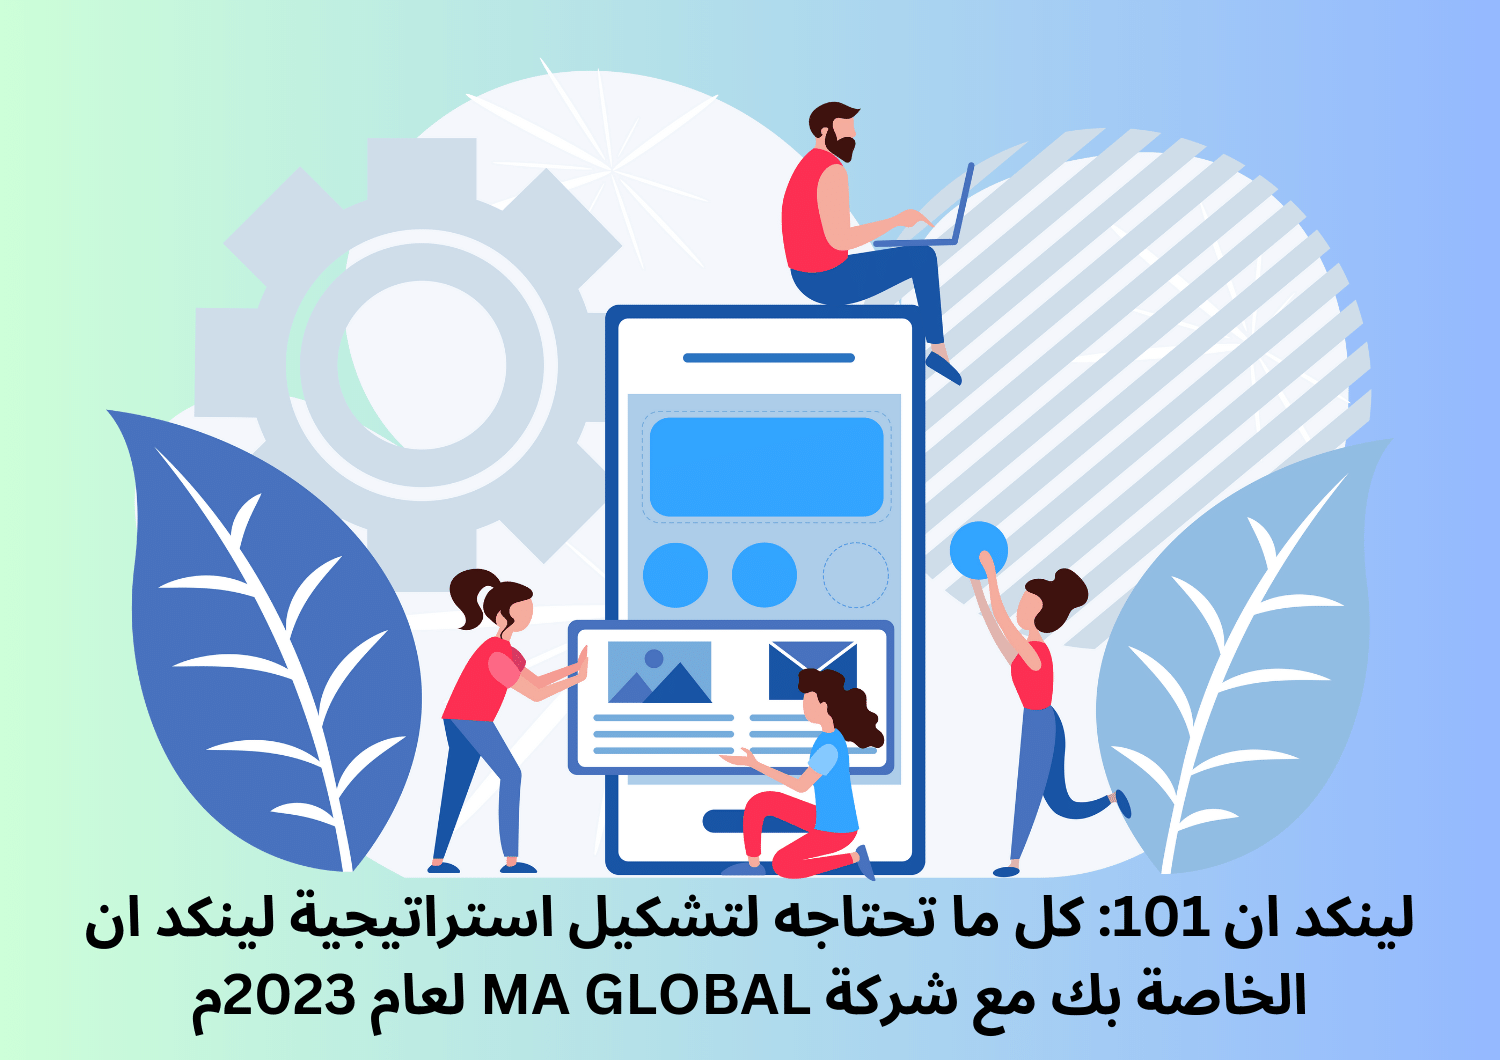 لينكد ان 101: كل ما تحتاجه لتشكيل استراتيجية لينكد ان الخاصة بك مع شركة MA GLOBAL لعام 2023م